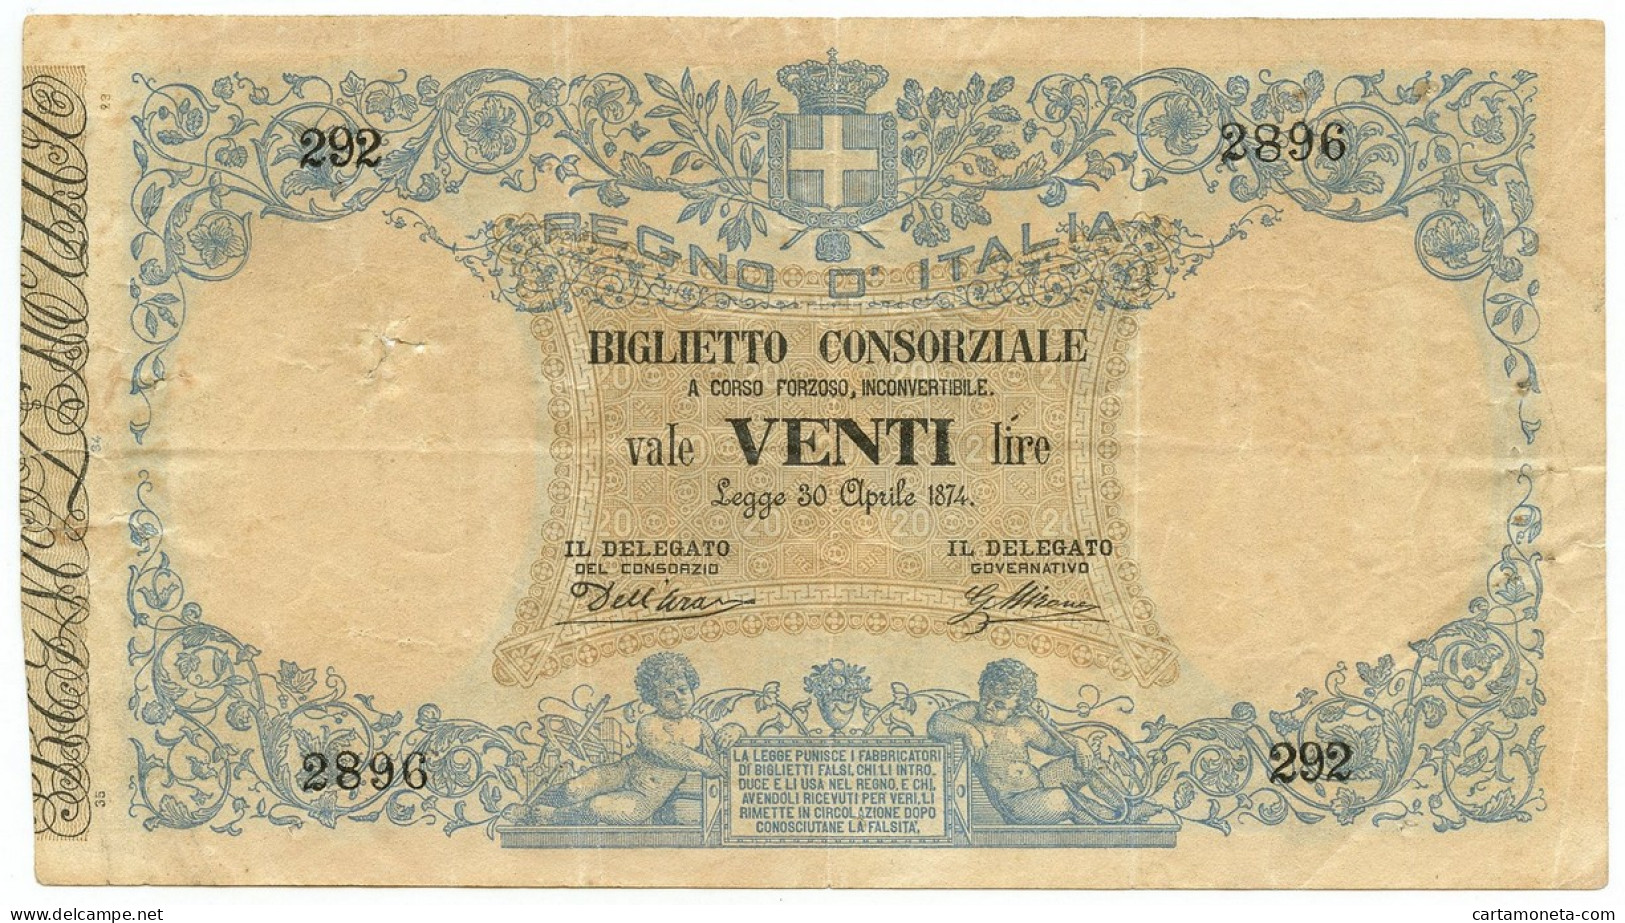 20 LIRE BIGLIETTO CONSORZIALE REGNO D'ITALIA 30/04/1874 BB - Biglietti Consorziale